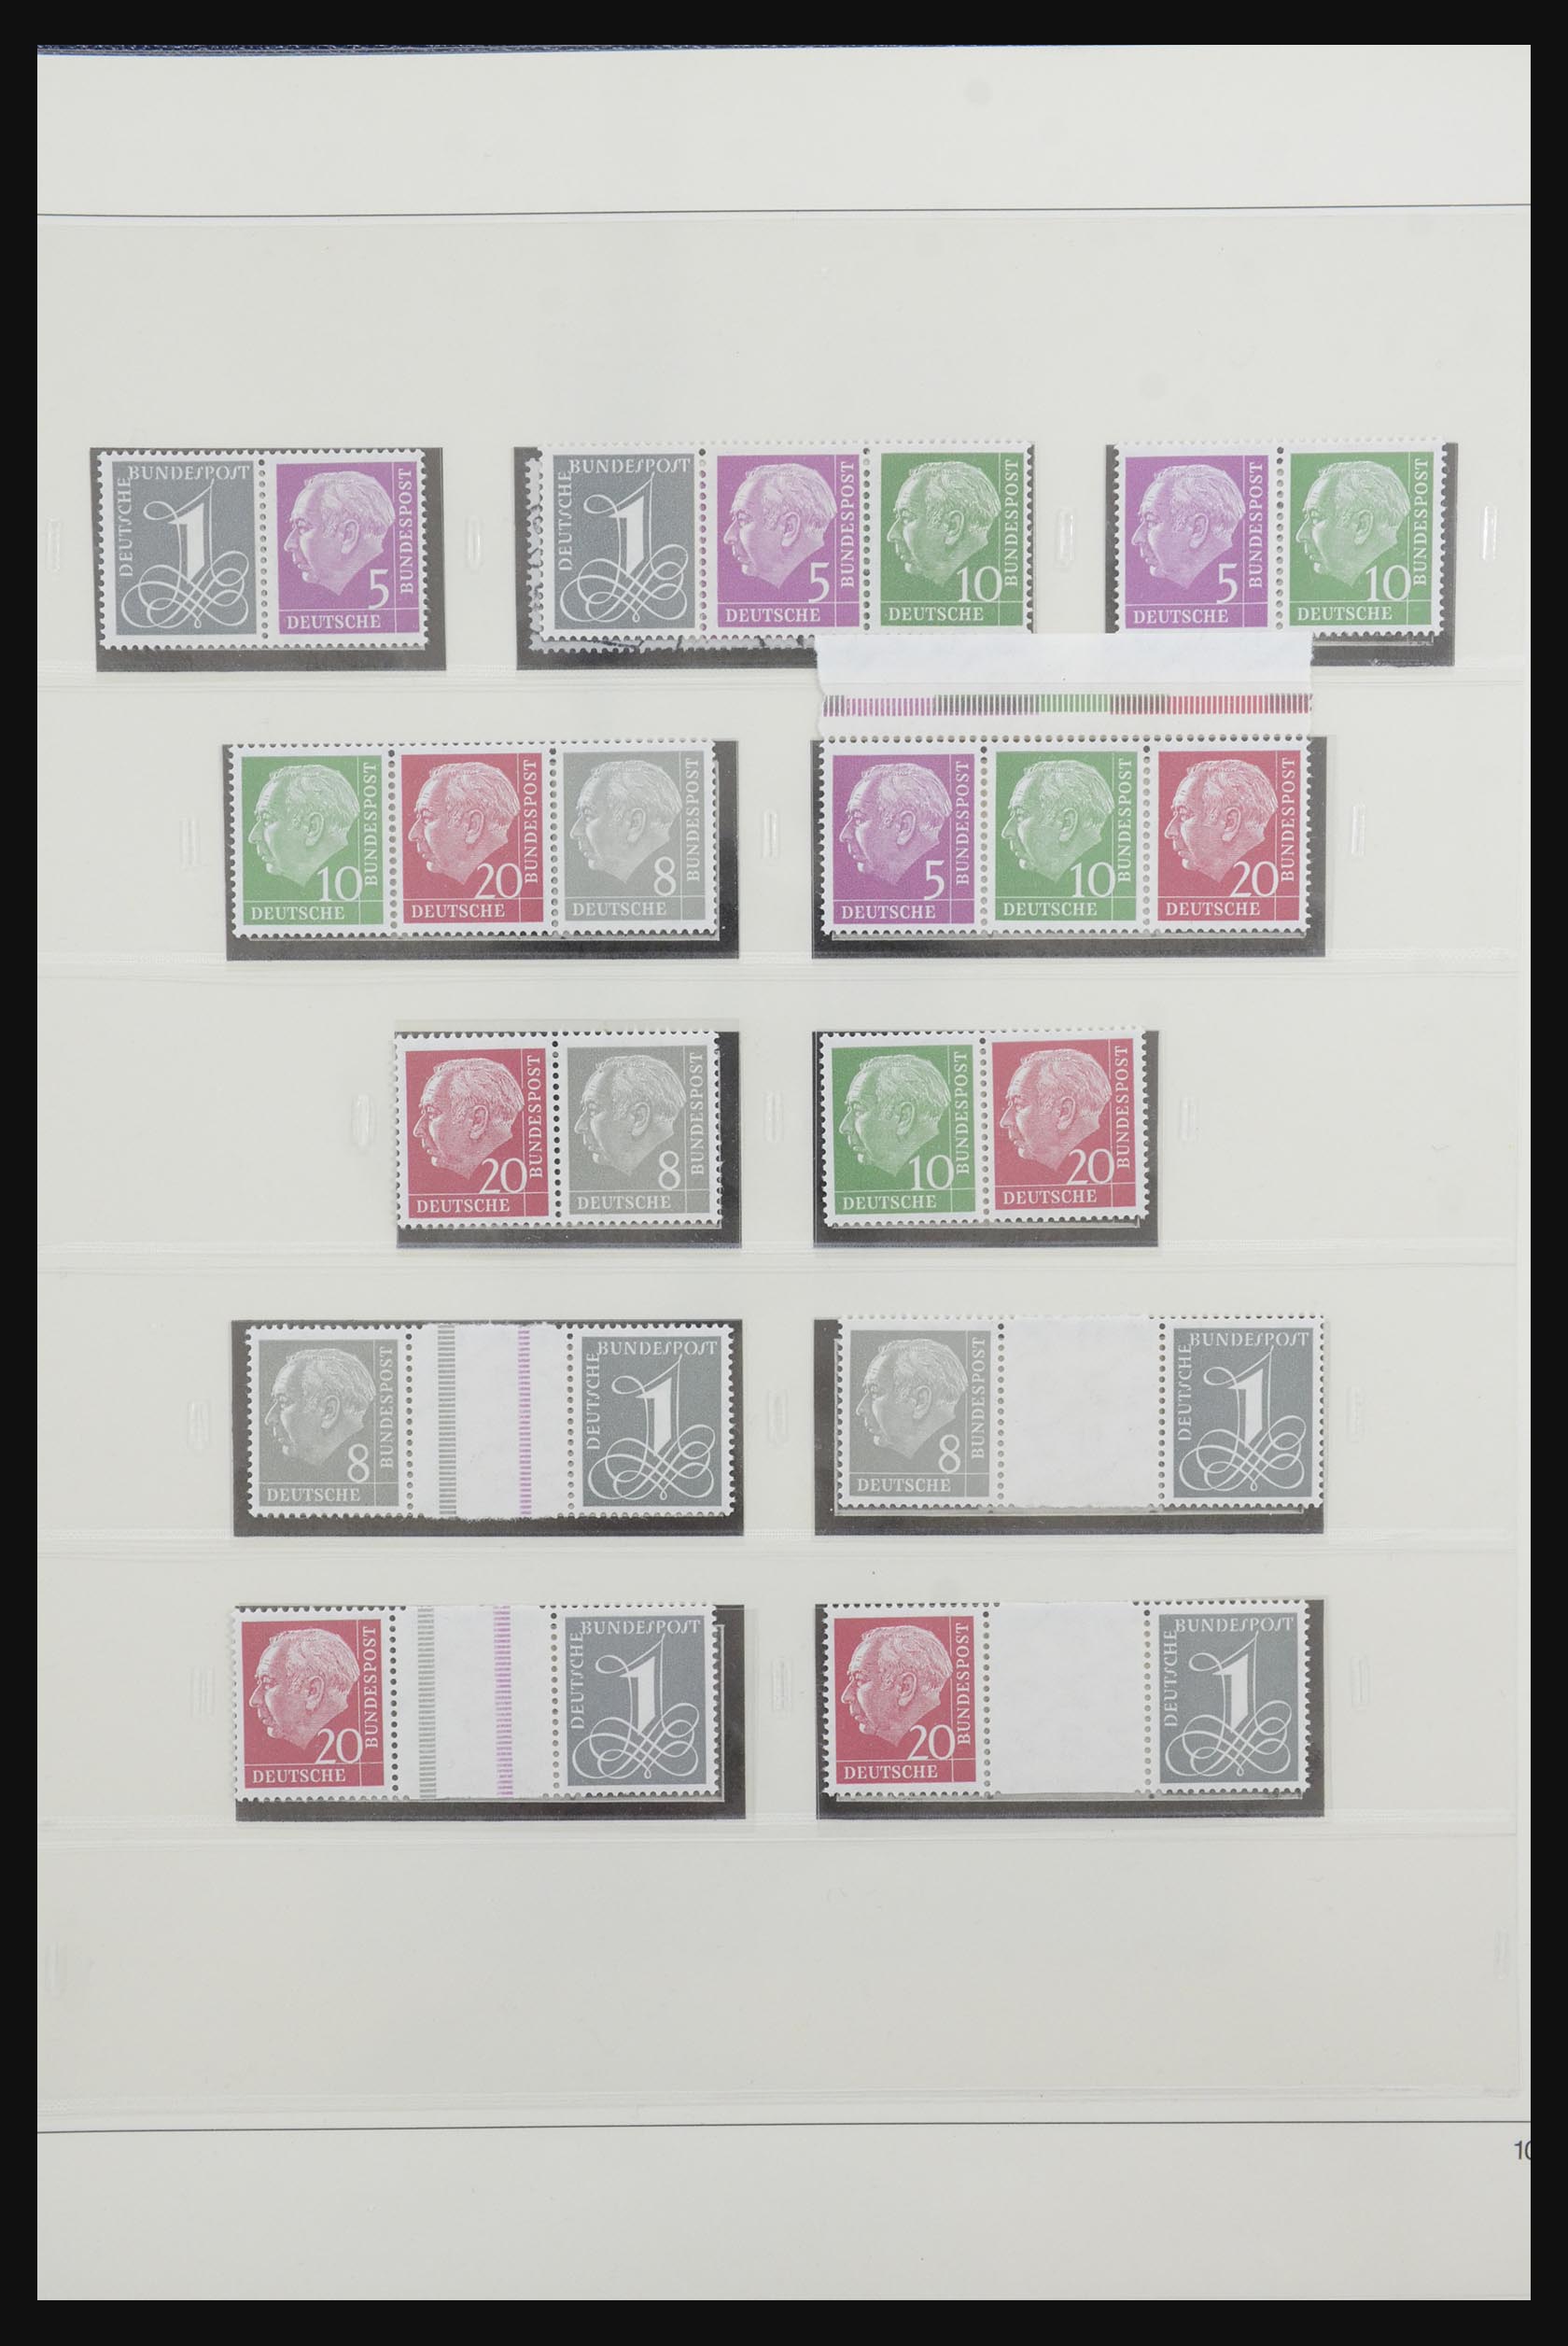 31842 012 - 31842 Bundespost combinations 1951-2003.